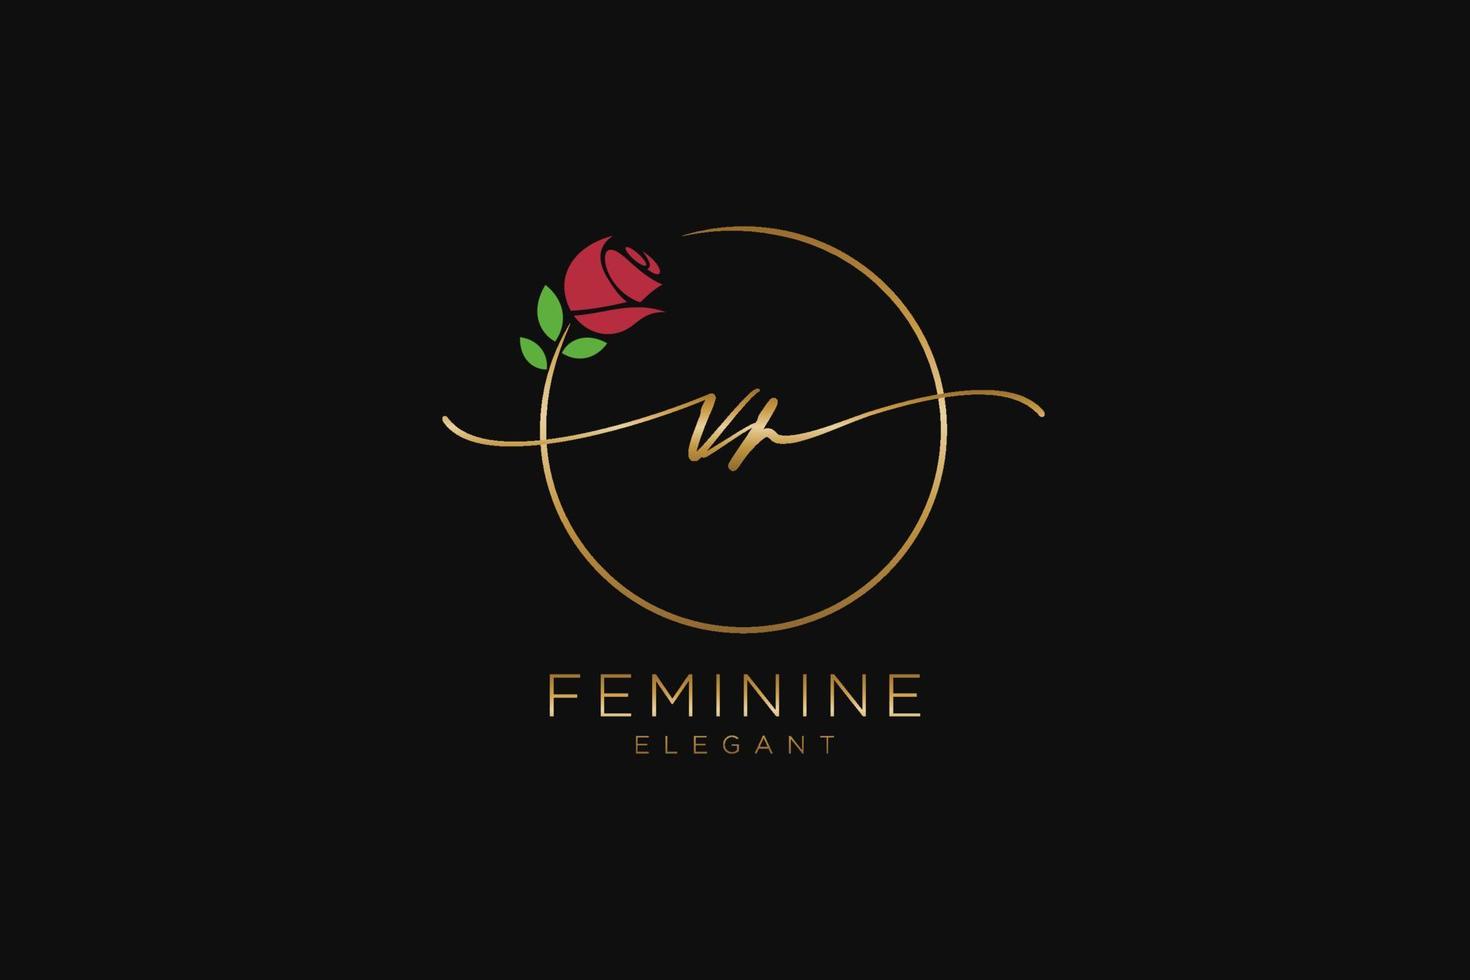 monogramme de beauté du logo féminin vr initial et création de logo élégante, logo manuscrit de la signature initiale, mariage, mode, floral et botanique avec modèle créatif. vecteur